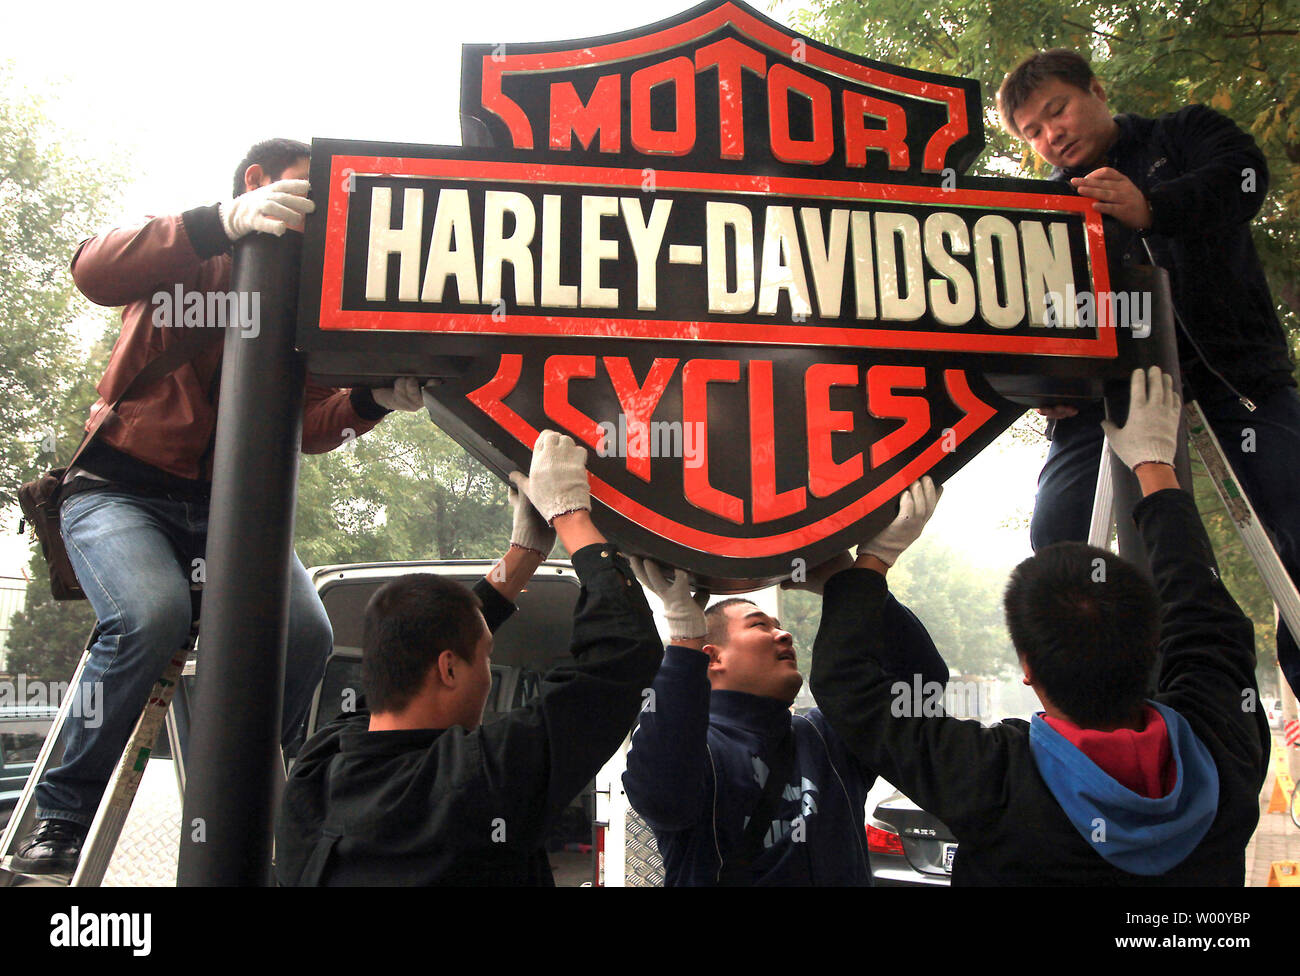 Les travailleurs chinois ont mis en place un panneau routier Harley-Davidson en face d'un bar à l'avant d'un parti des propriétaires de moto Harley-Davidson à Beijing le 31 octobre 2011. Harley-Davidson a ouvert sa première concession en Chine en 2005 et a maintenant quatre concessionnaires opérant à l'échelle nationale. Harley a indiqué que les ventes ont doublé en Chine, l'an dernier et prévoit d'ouvrir quatre nouvelles affaires cette année. La Chine est le marché le plus dynamique pour le fabricant de motos américaines, selon le vice-président de Harley Rodney Copes. UPI/Stephen Shaver Banque D'Images